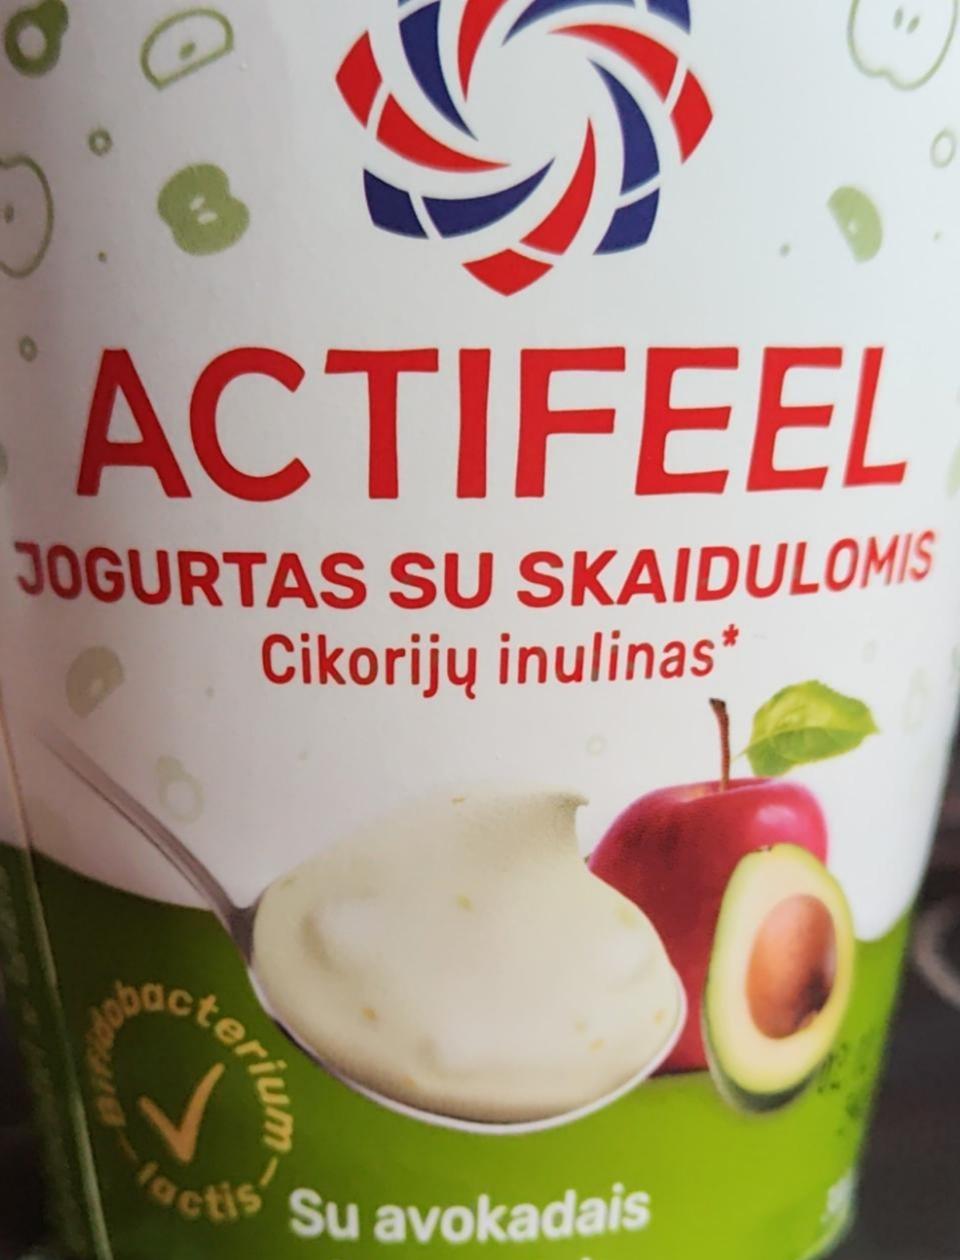 Фото - Actifeel jogurtas žemaitijos pienas